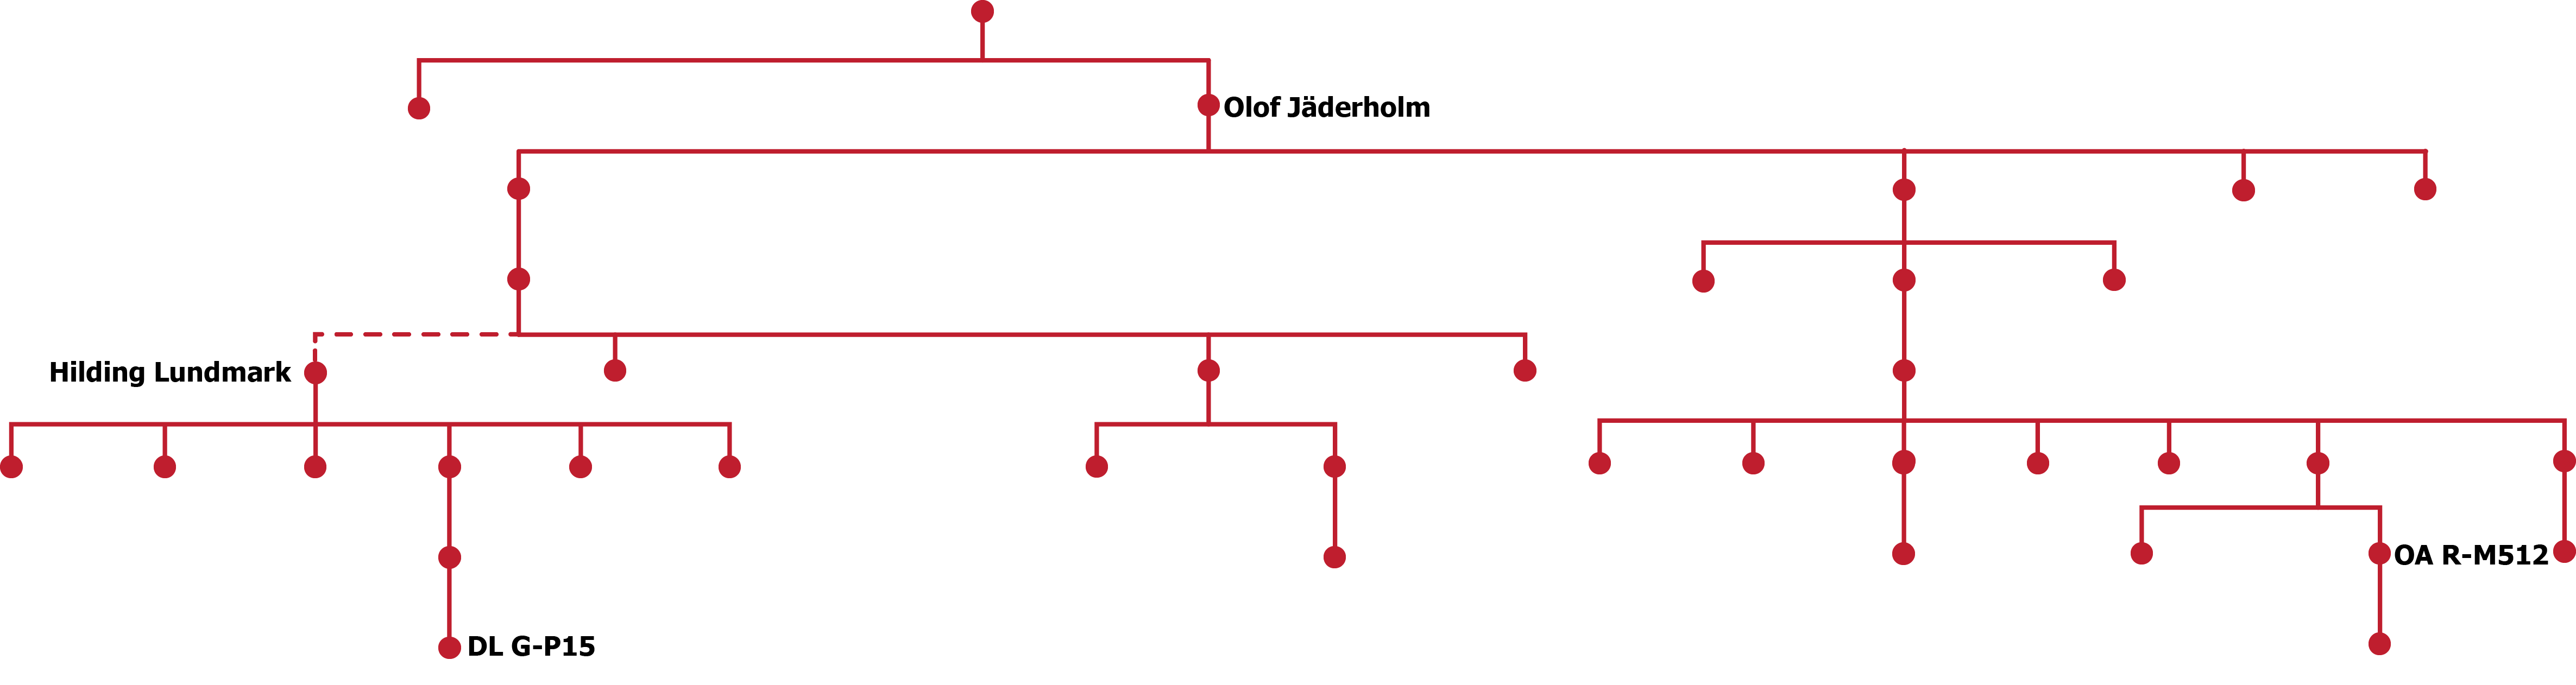 ydna schema jaderholm